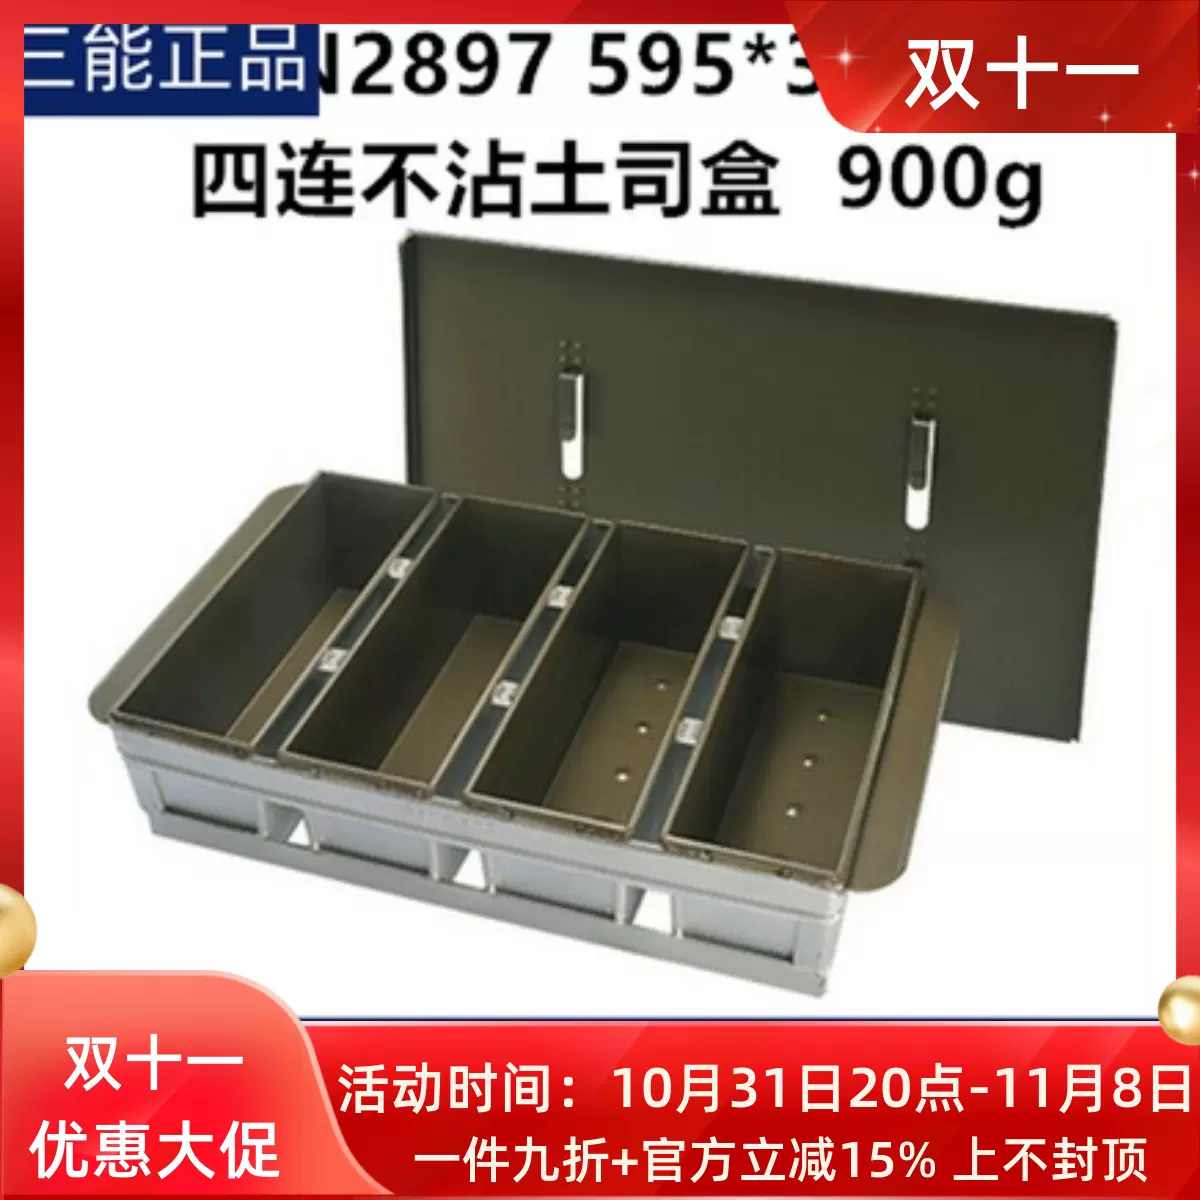 三能900g四连模1000g三连不沾吐司盒SN2897 SN2906商用土司盒-Taobao